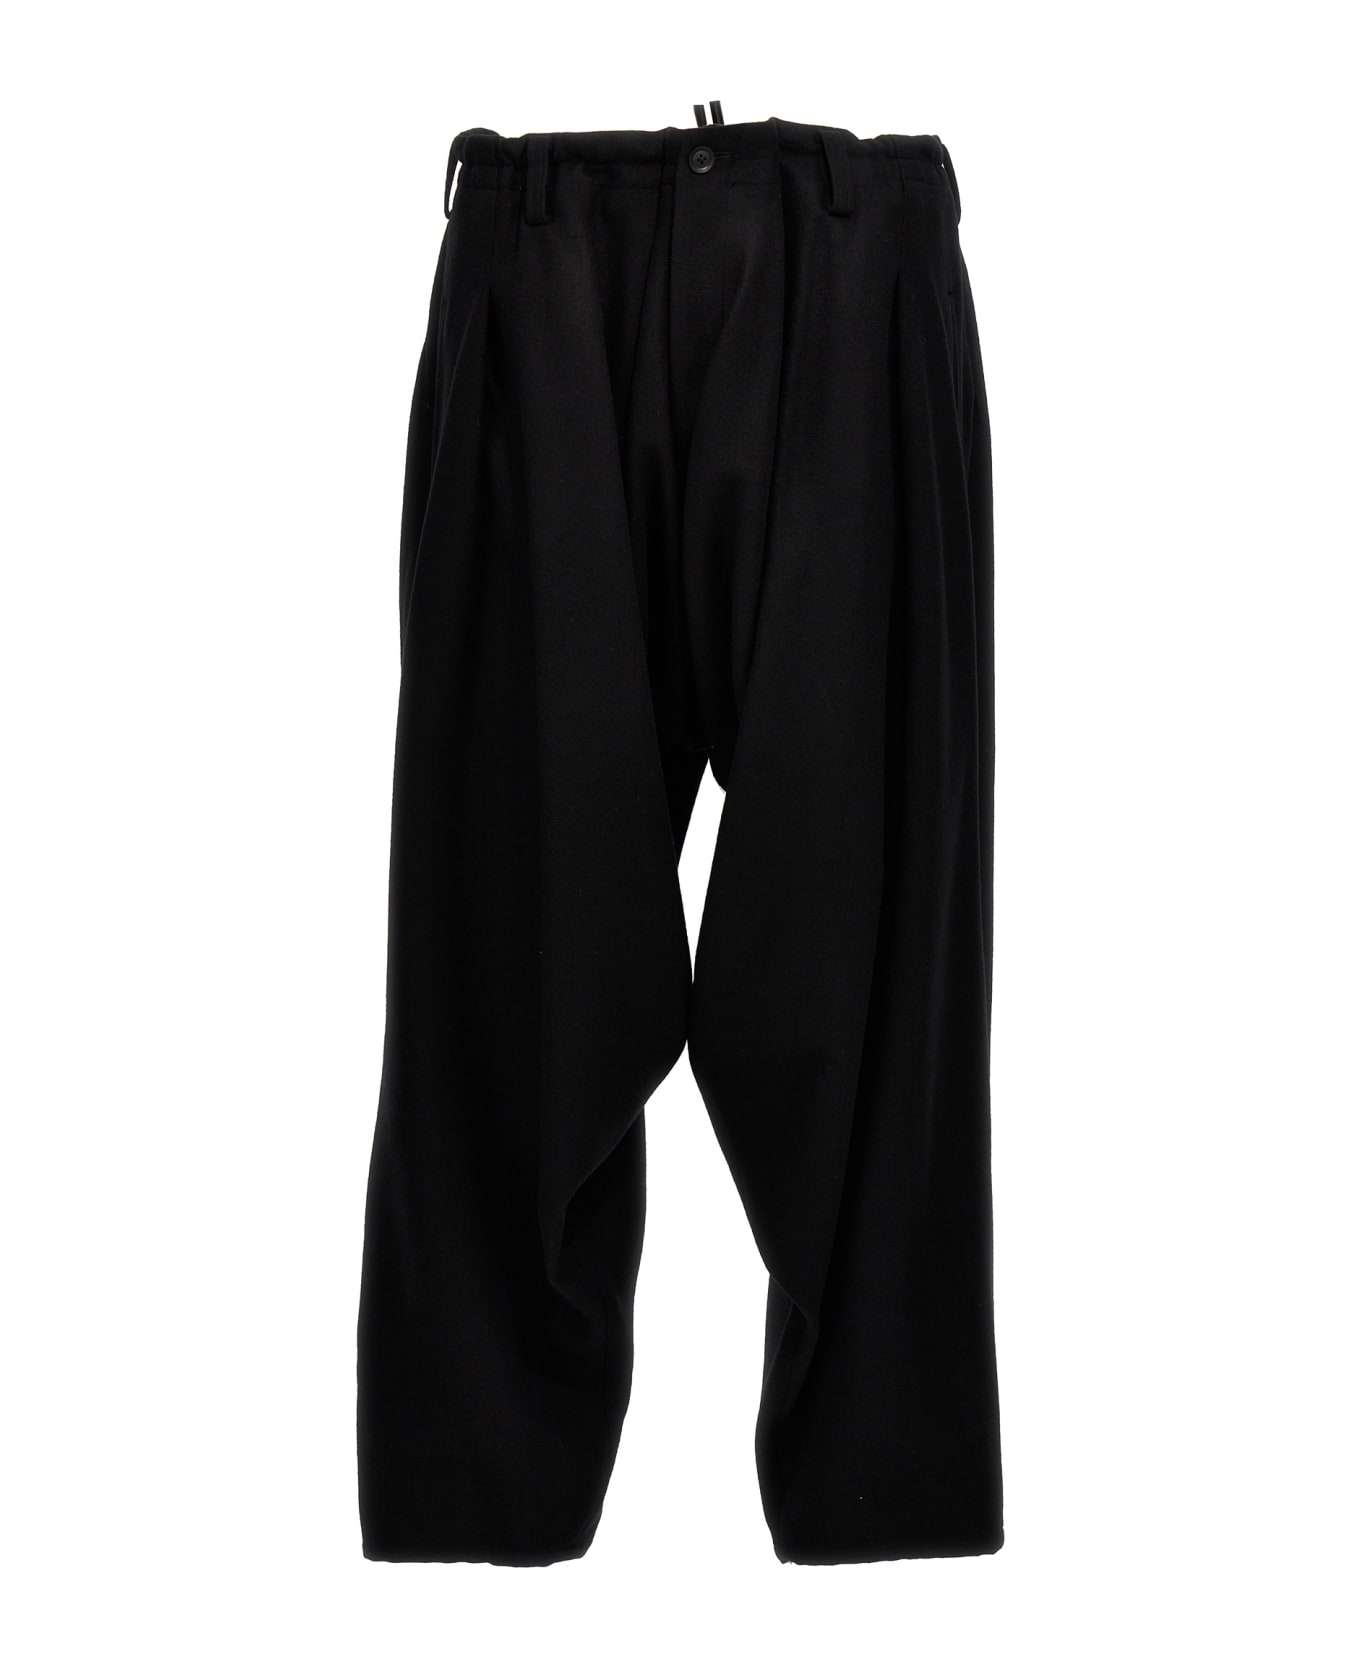 Yohji Yamamoto Low Crotch Pants - Black  